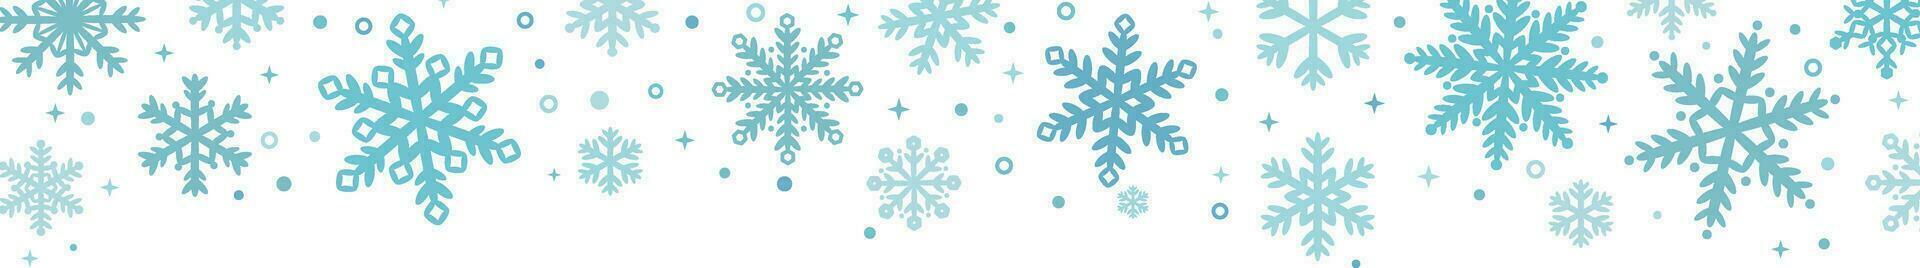 neige tomber salutation bannière avec bleu main tiré neige flocon éléments, vecteur frontière pour le hiver vacances, isolé agrafe art